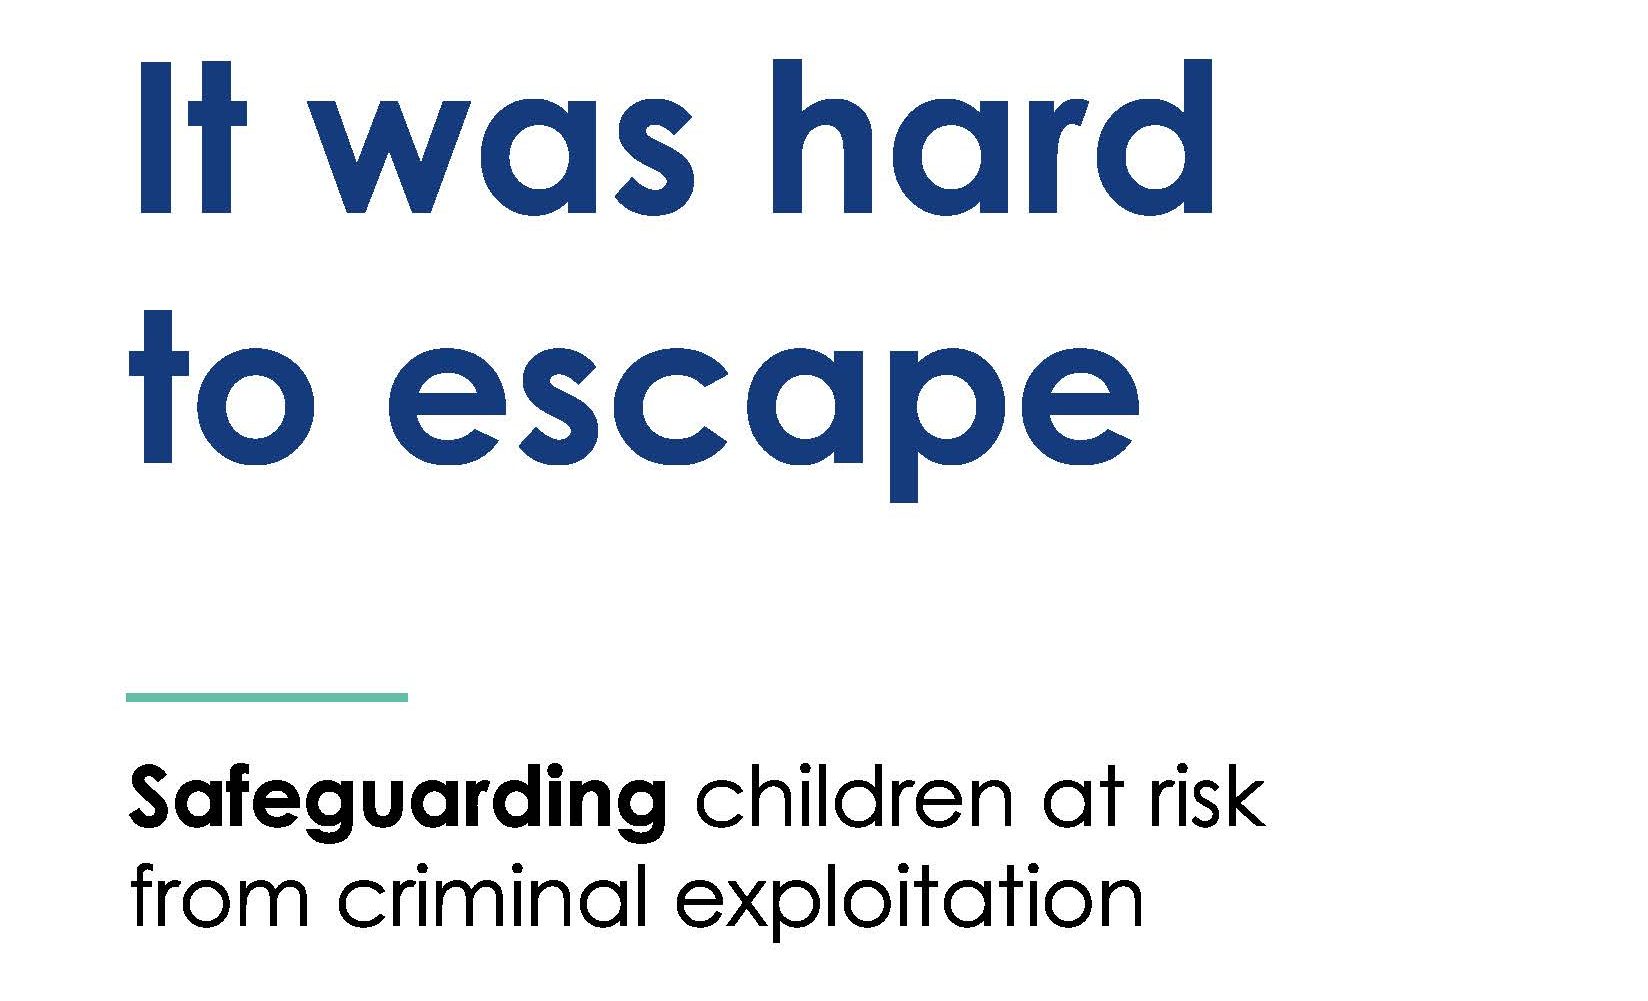 Safeguarding children at risk of exploitation